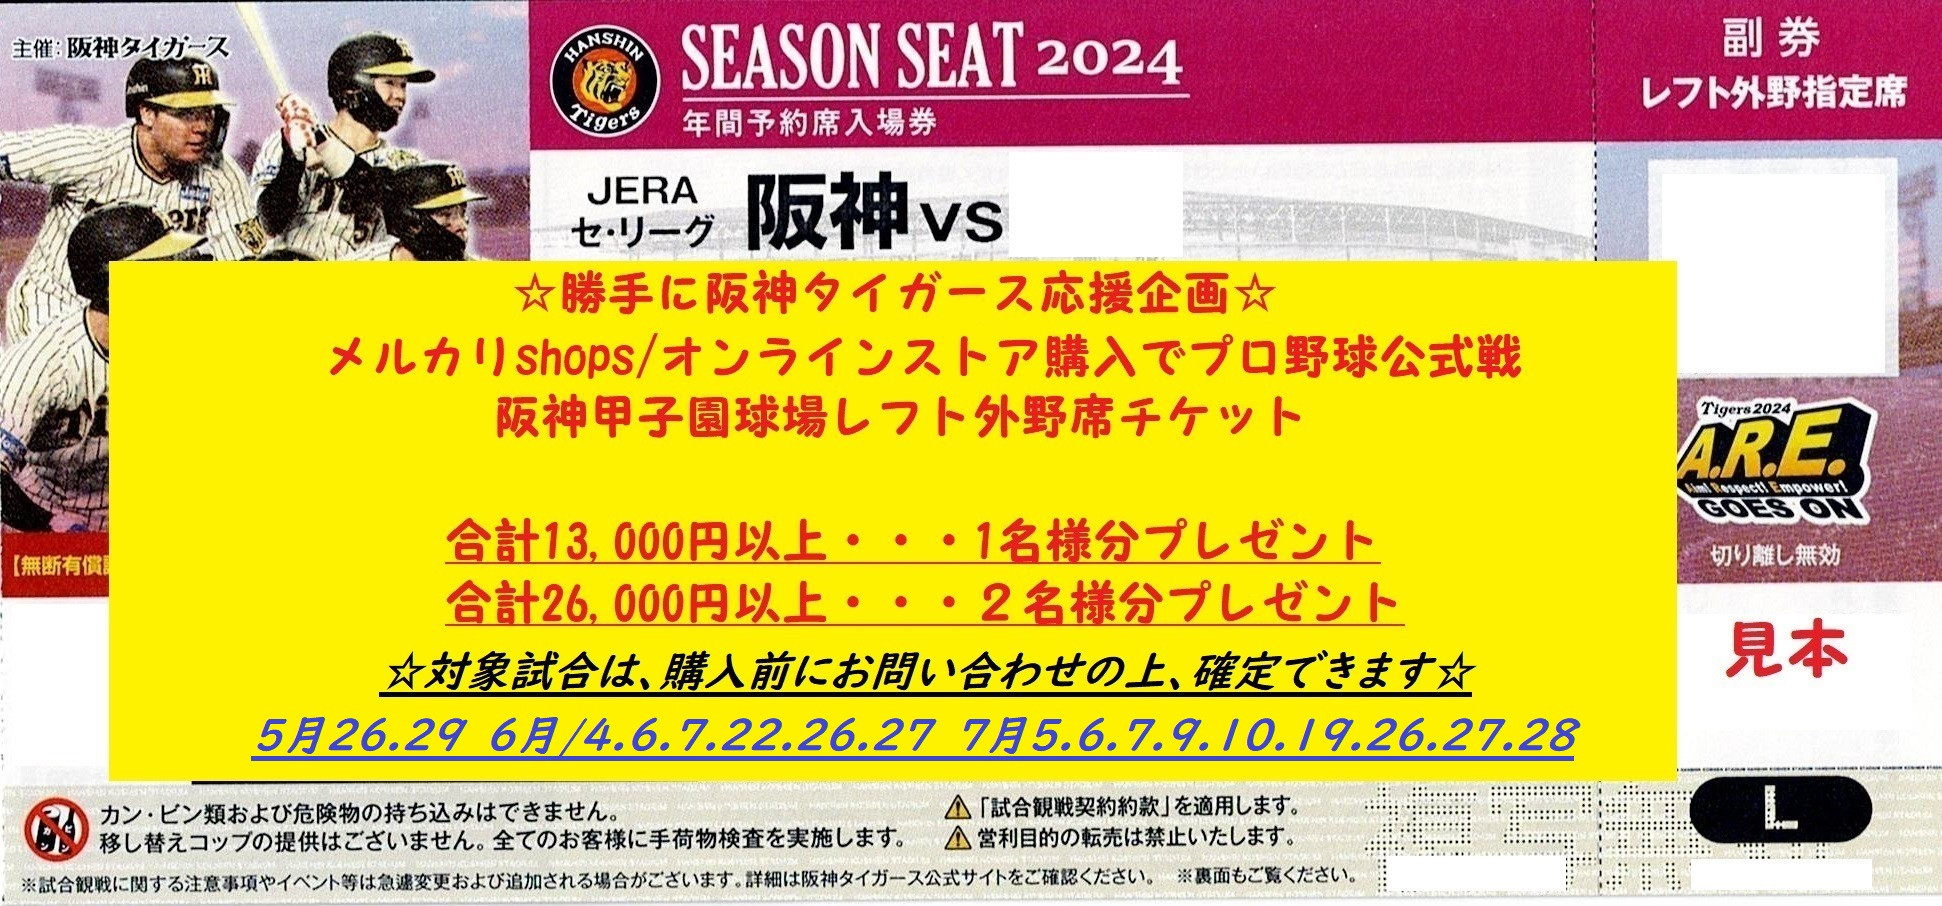 【オンラインストア】オンラインストアの購入で阪神タイガース公式戦阪神甲子園球場レフト外野指定席チケットをプレゼント🥎